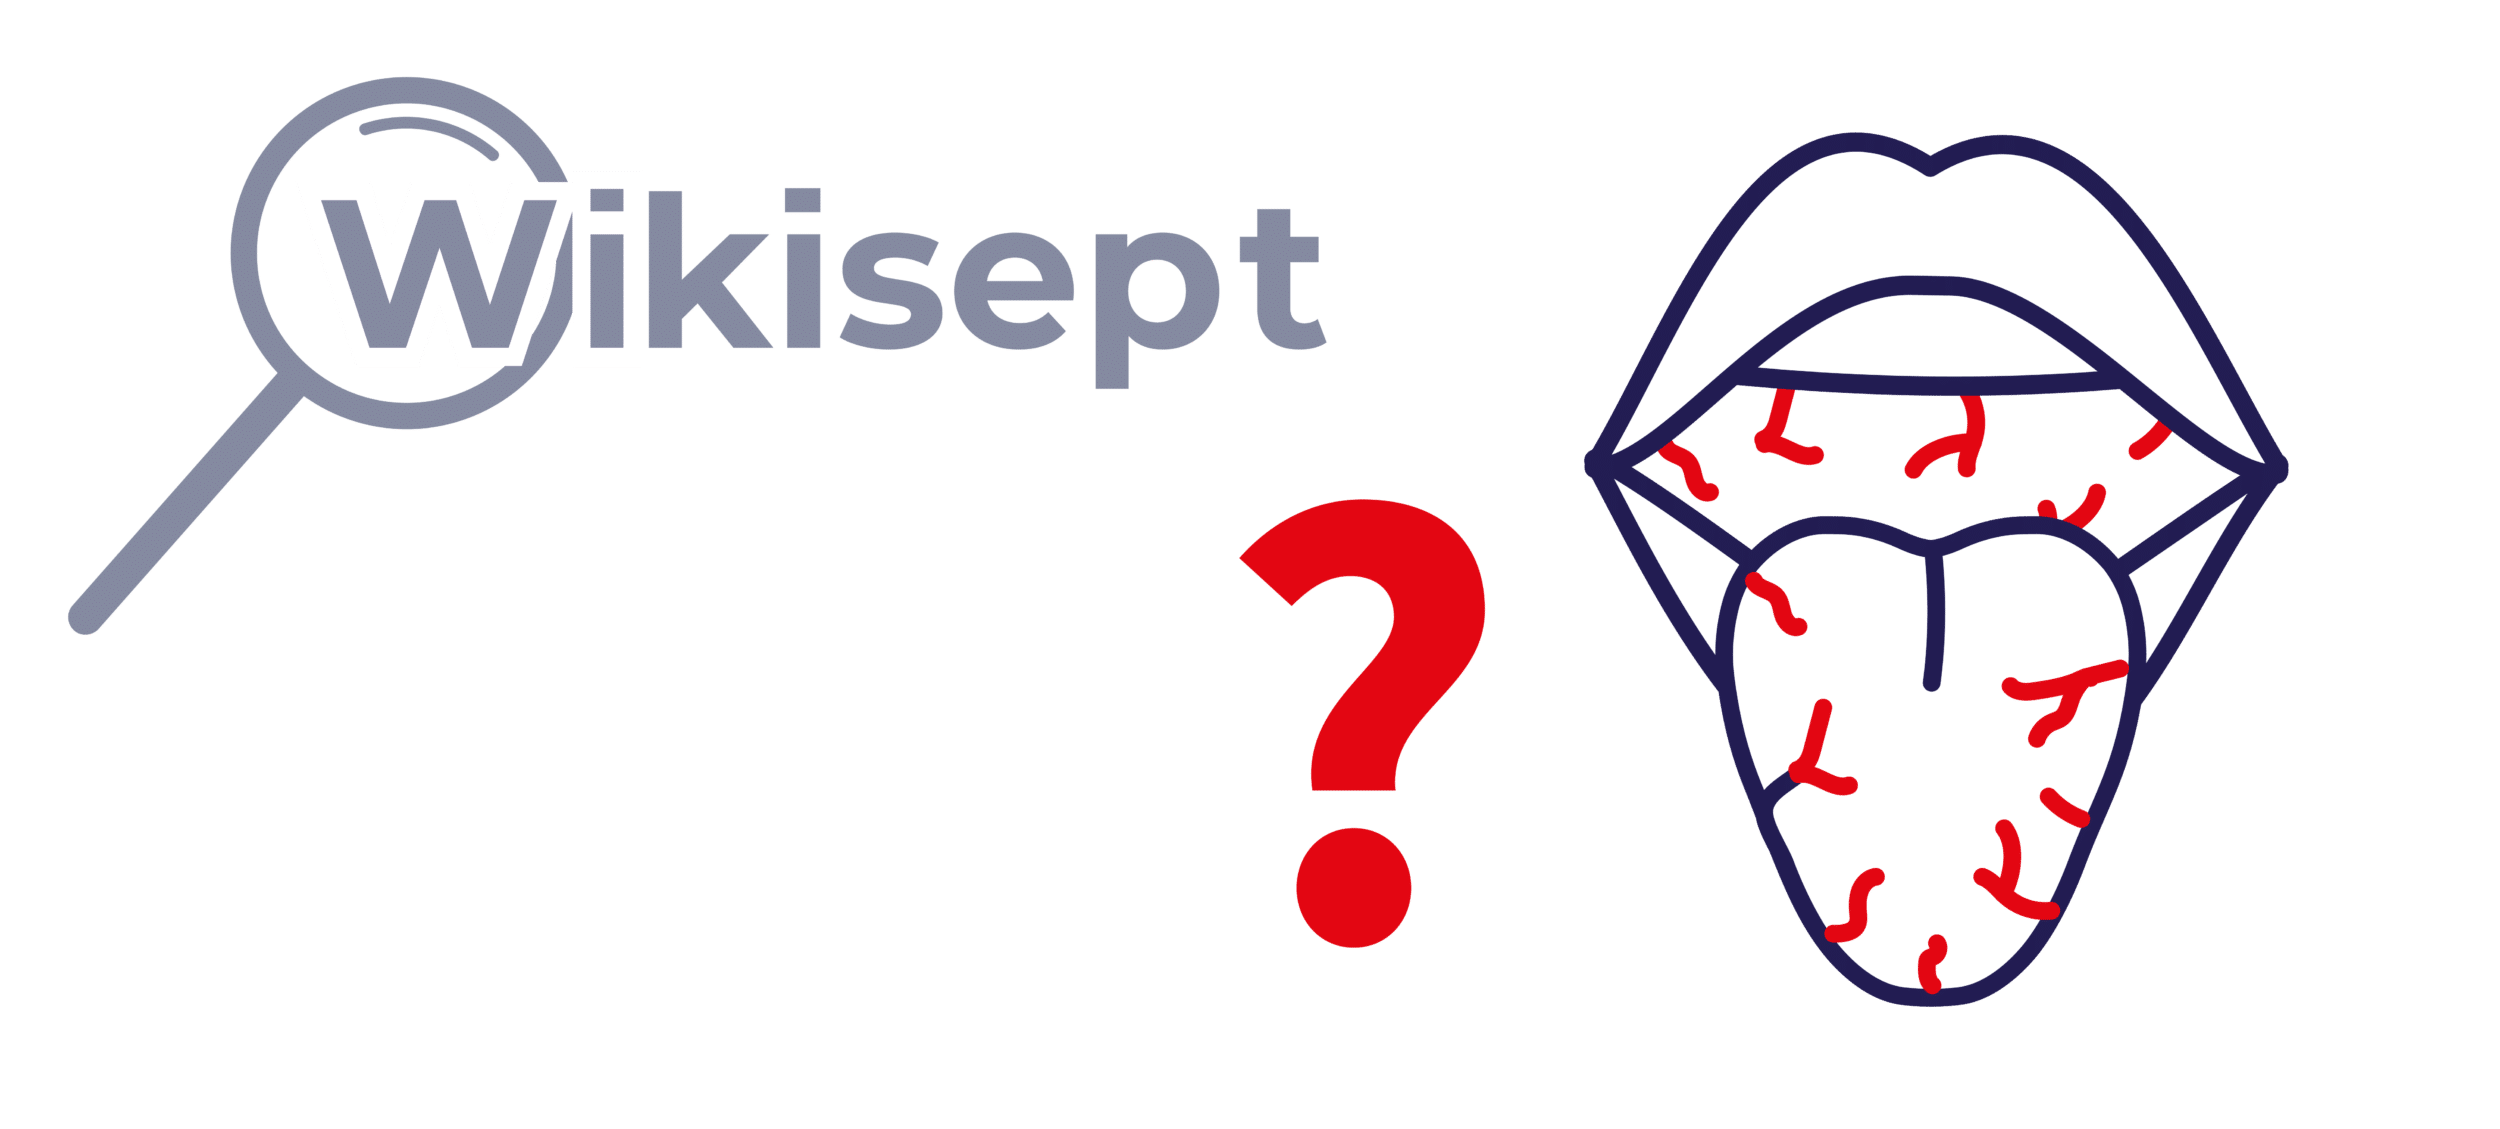 icona articolo Wikisept 'Boccasecca: cause, sintomi e rimedi' con bocca e lingua asciutte e punto interrogativo